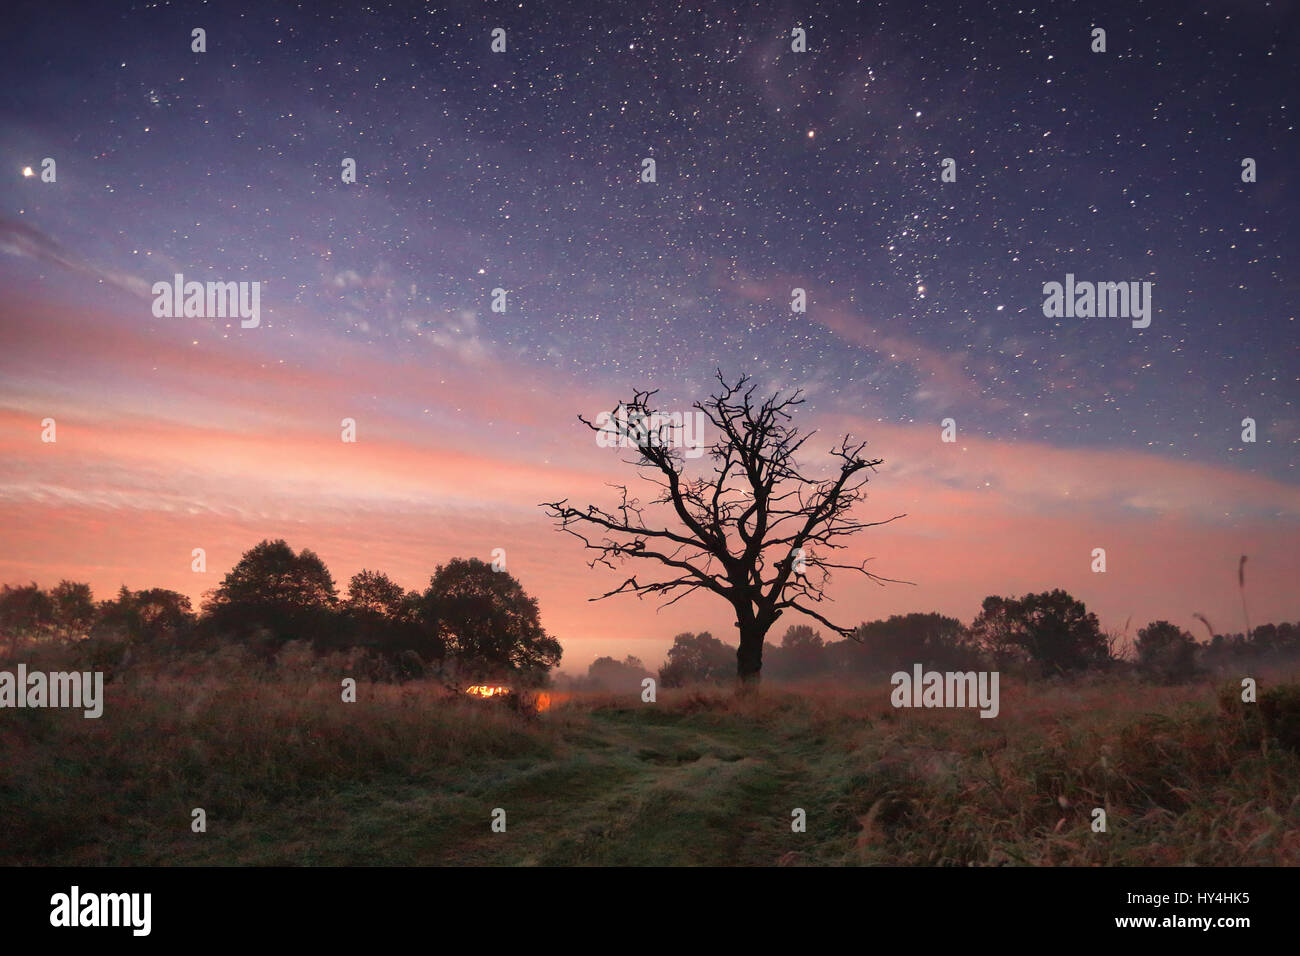 Sternenhimmel über Wiese in der Nacht. Nacht-Landschaft mit Pfad unter Sternen. Schöne Reise Hintergrund. Konzept für den Erfolg. Stockfoto